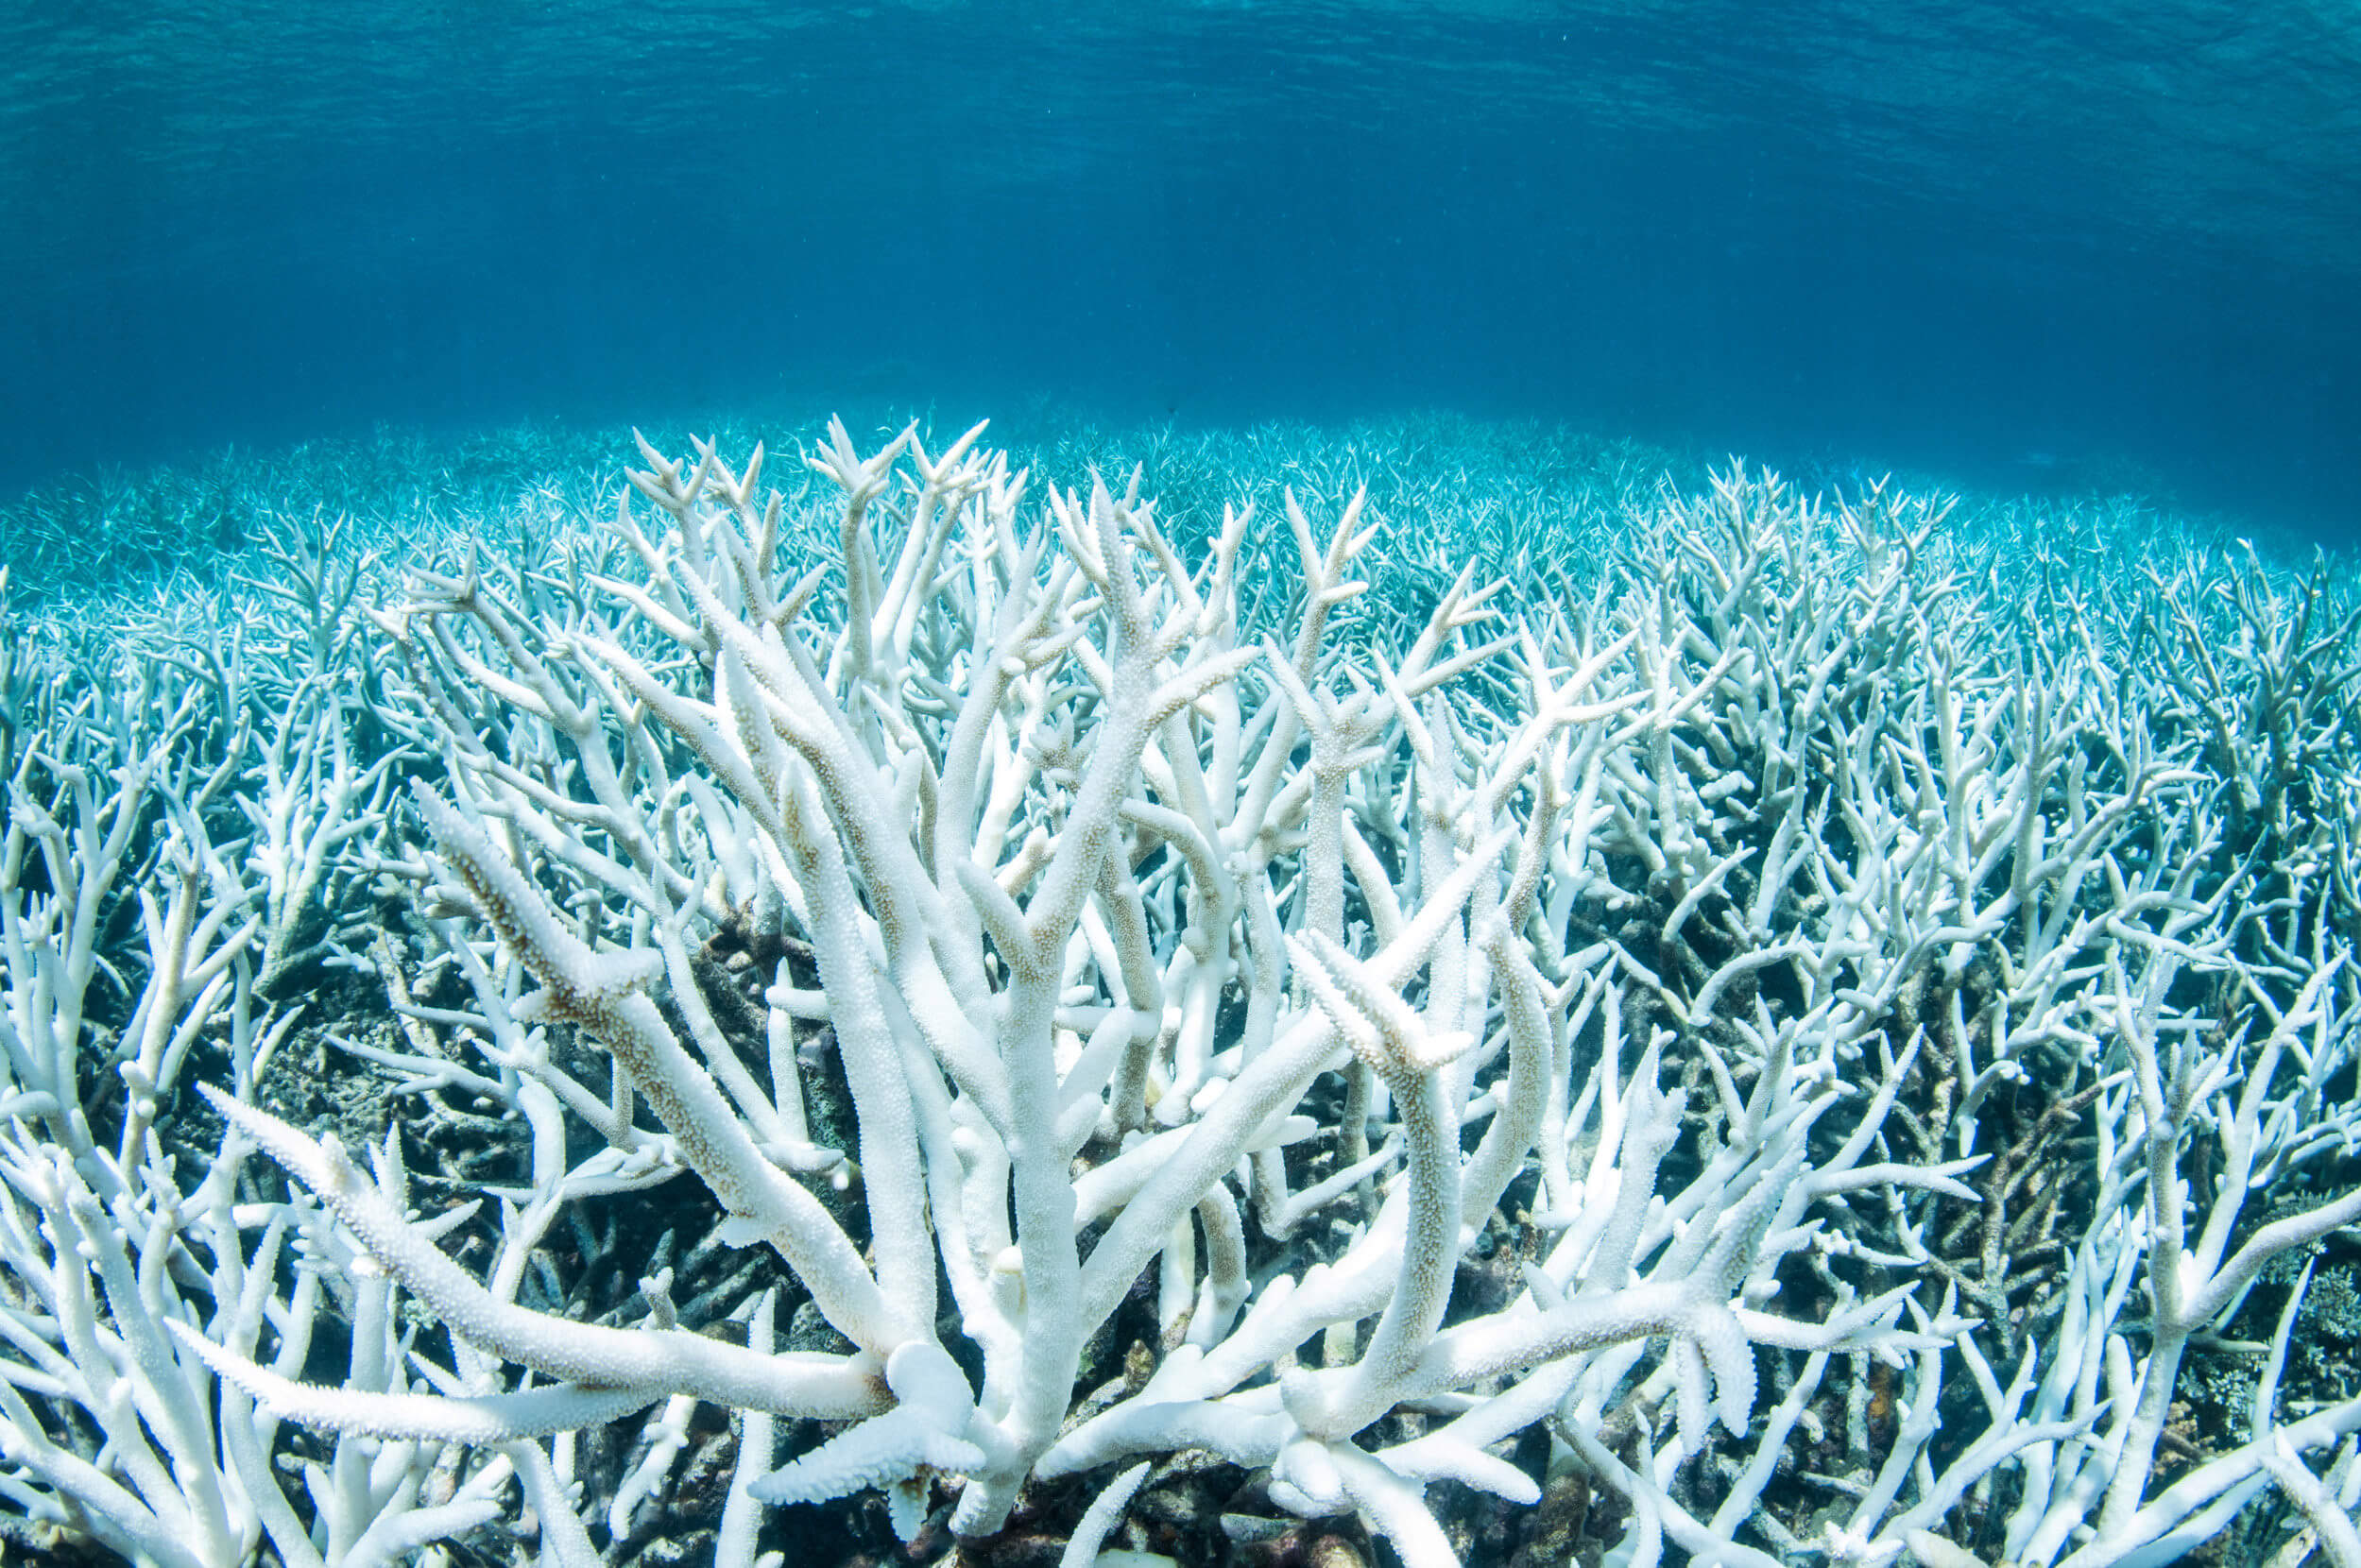 澳洲大堡礁的大規模珊瑚白化死亡事件都是因極端「水下熱浪」所引起的- 明日科學新媒體